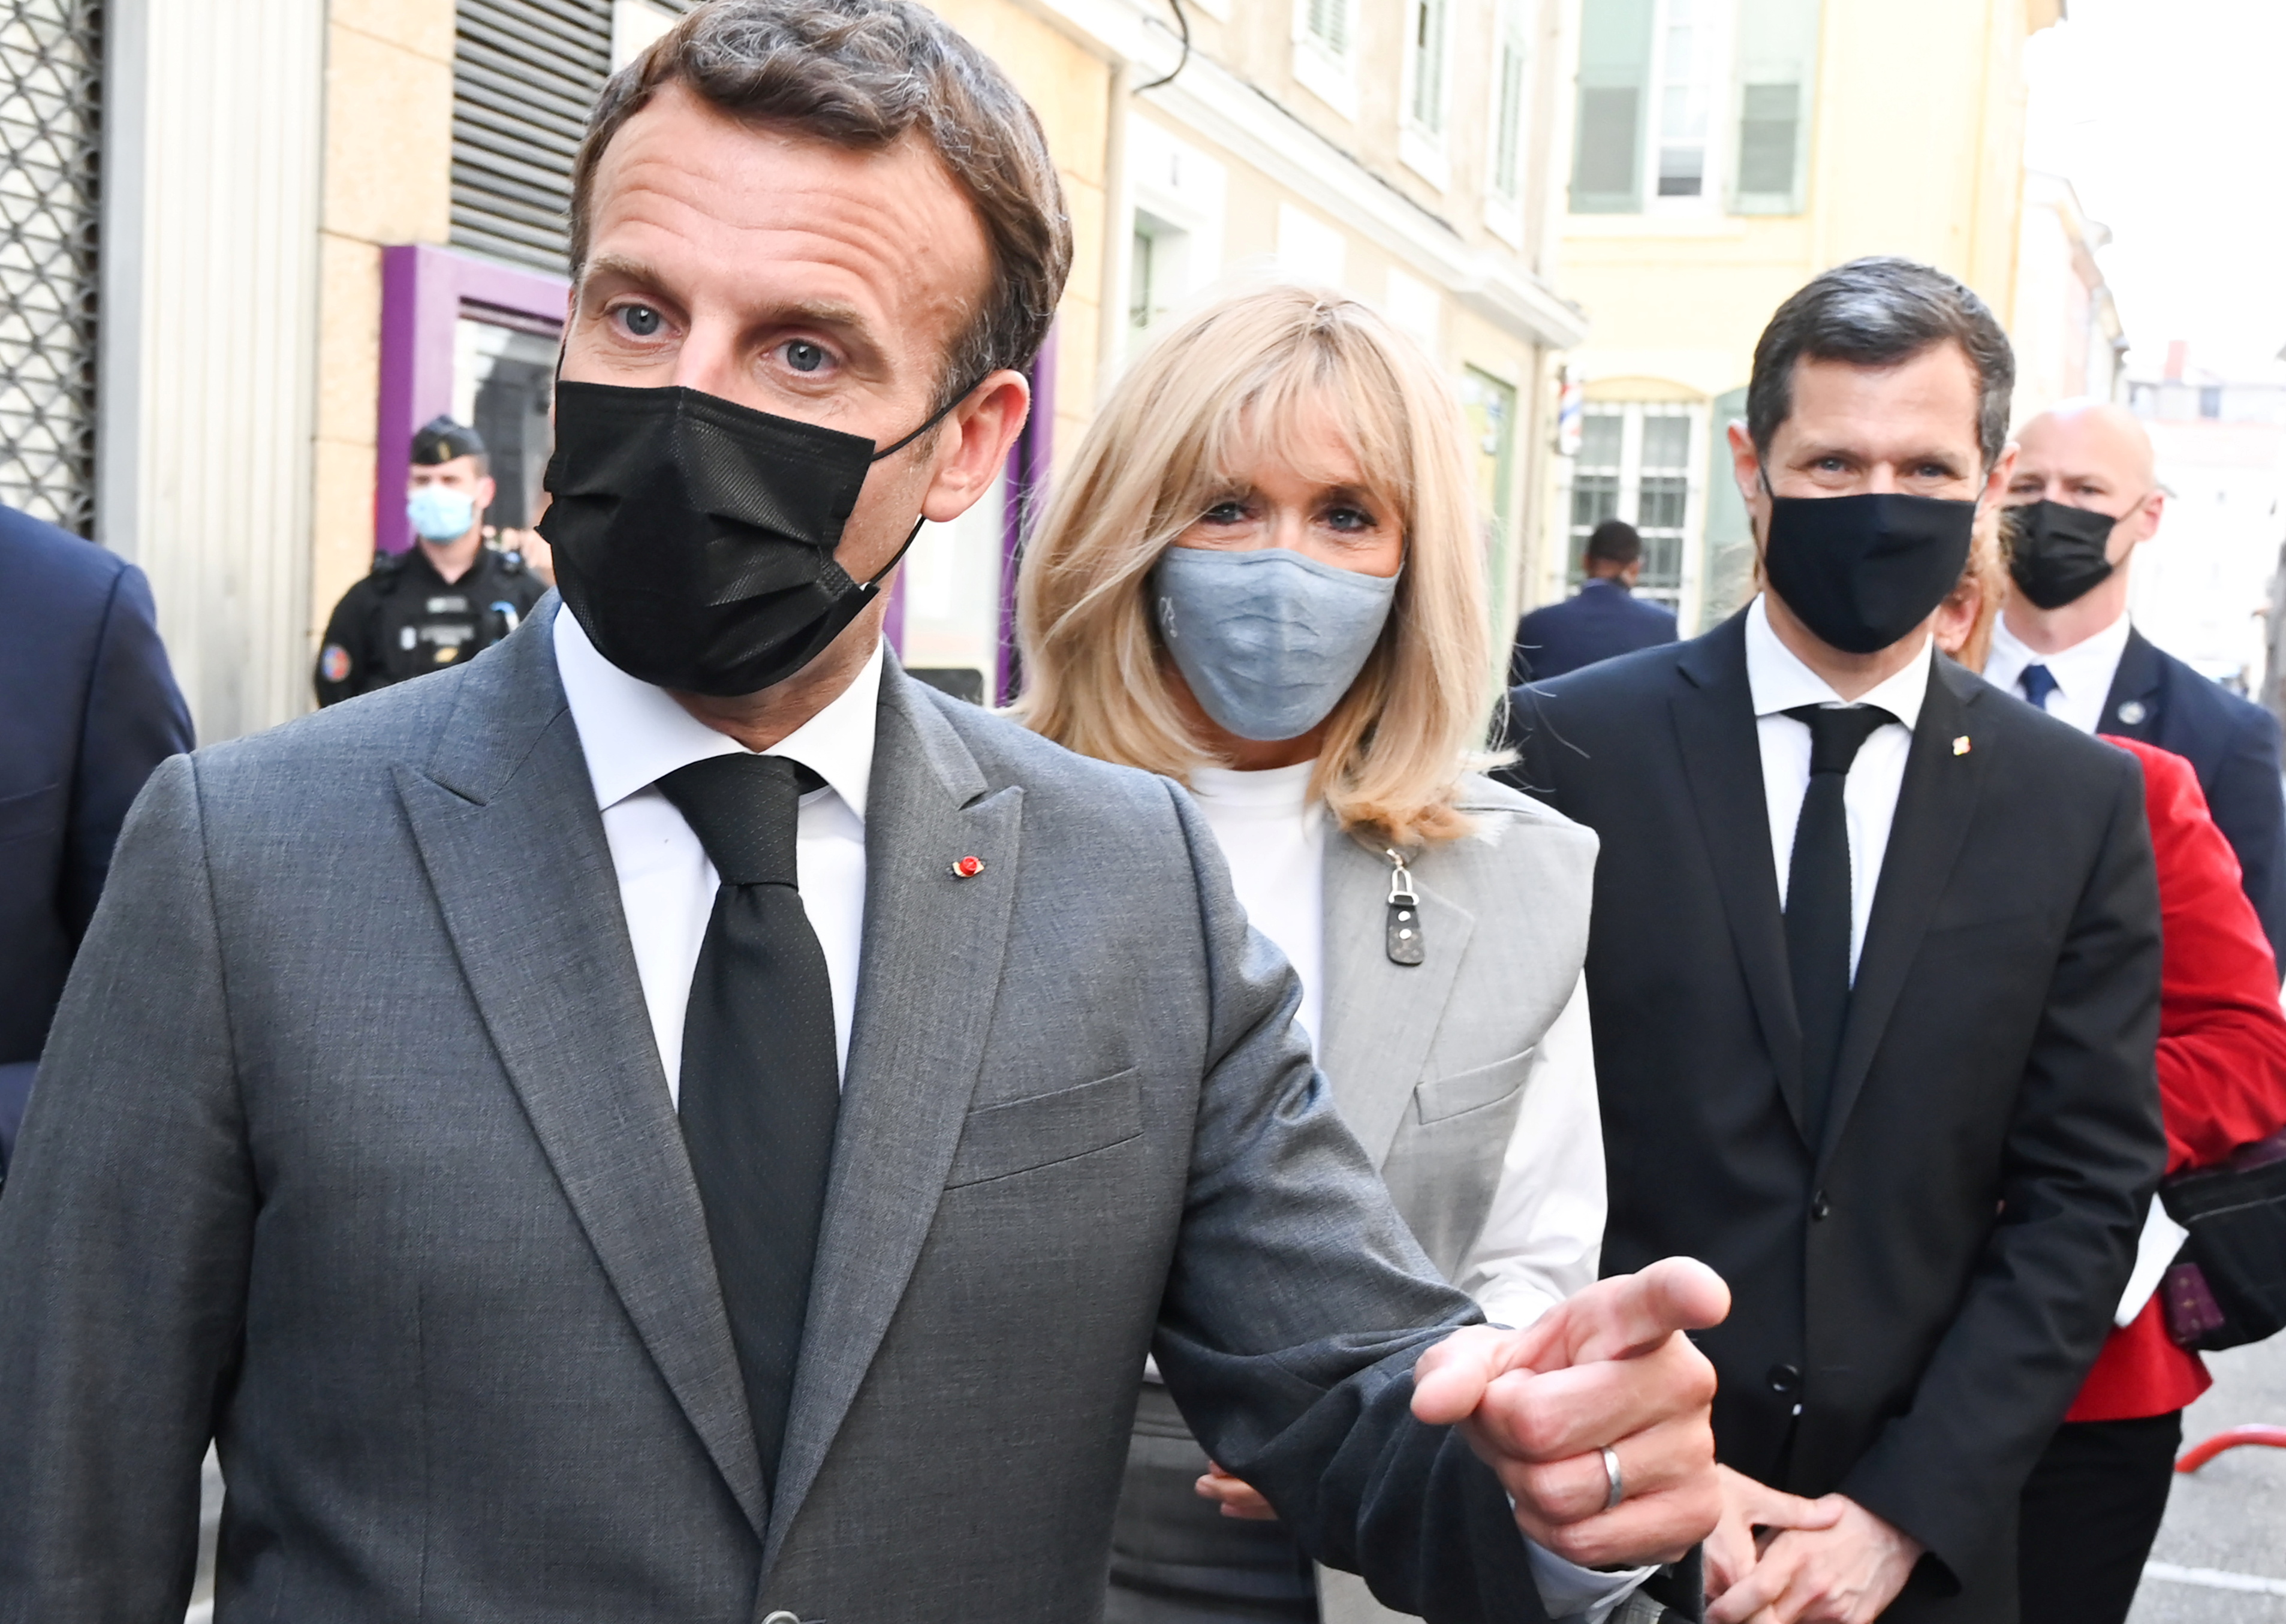 Macron dice que bofetada fue un incidente “aislado” perpetrado por “individuos ultraviolentos”